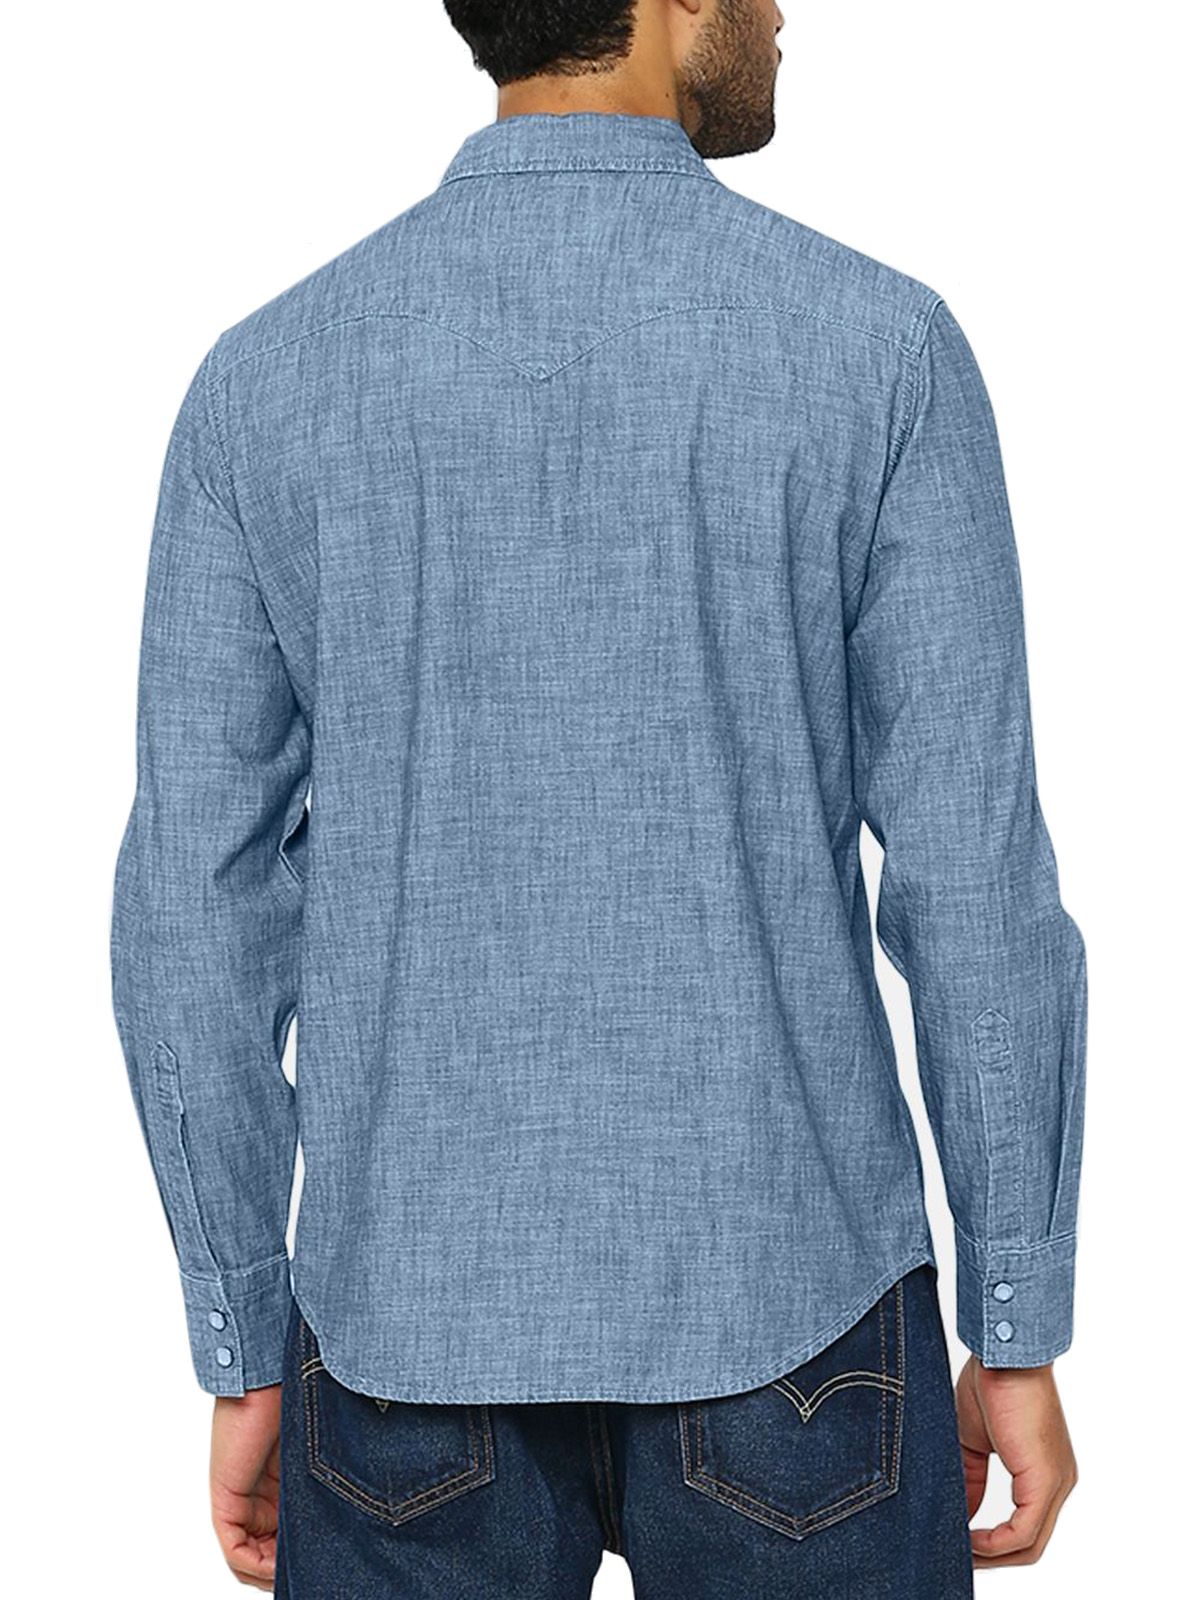 Camicie casual Uomo Levi's - Camicia Western Barstow Taglio Standard - Blu